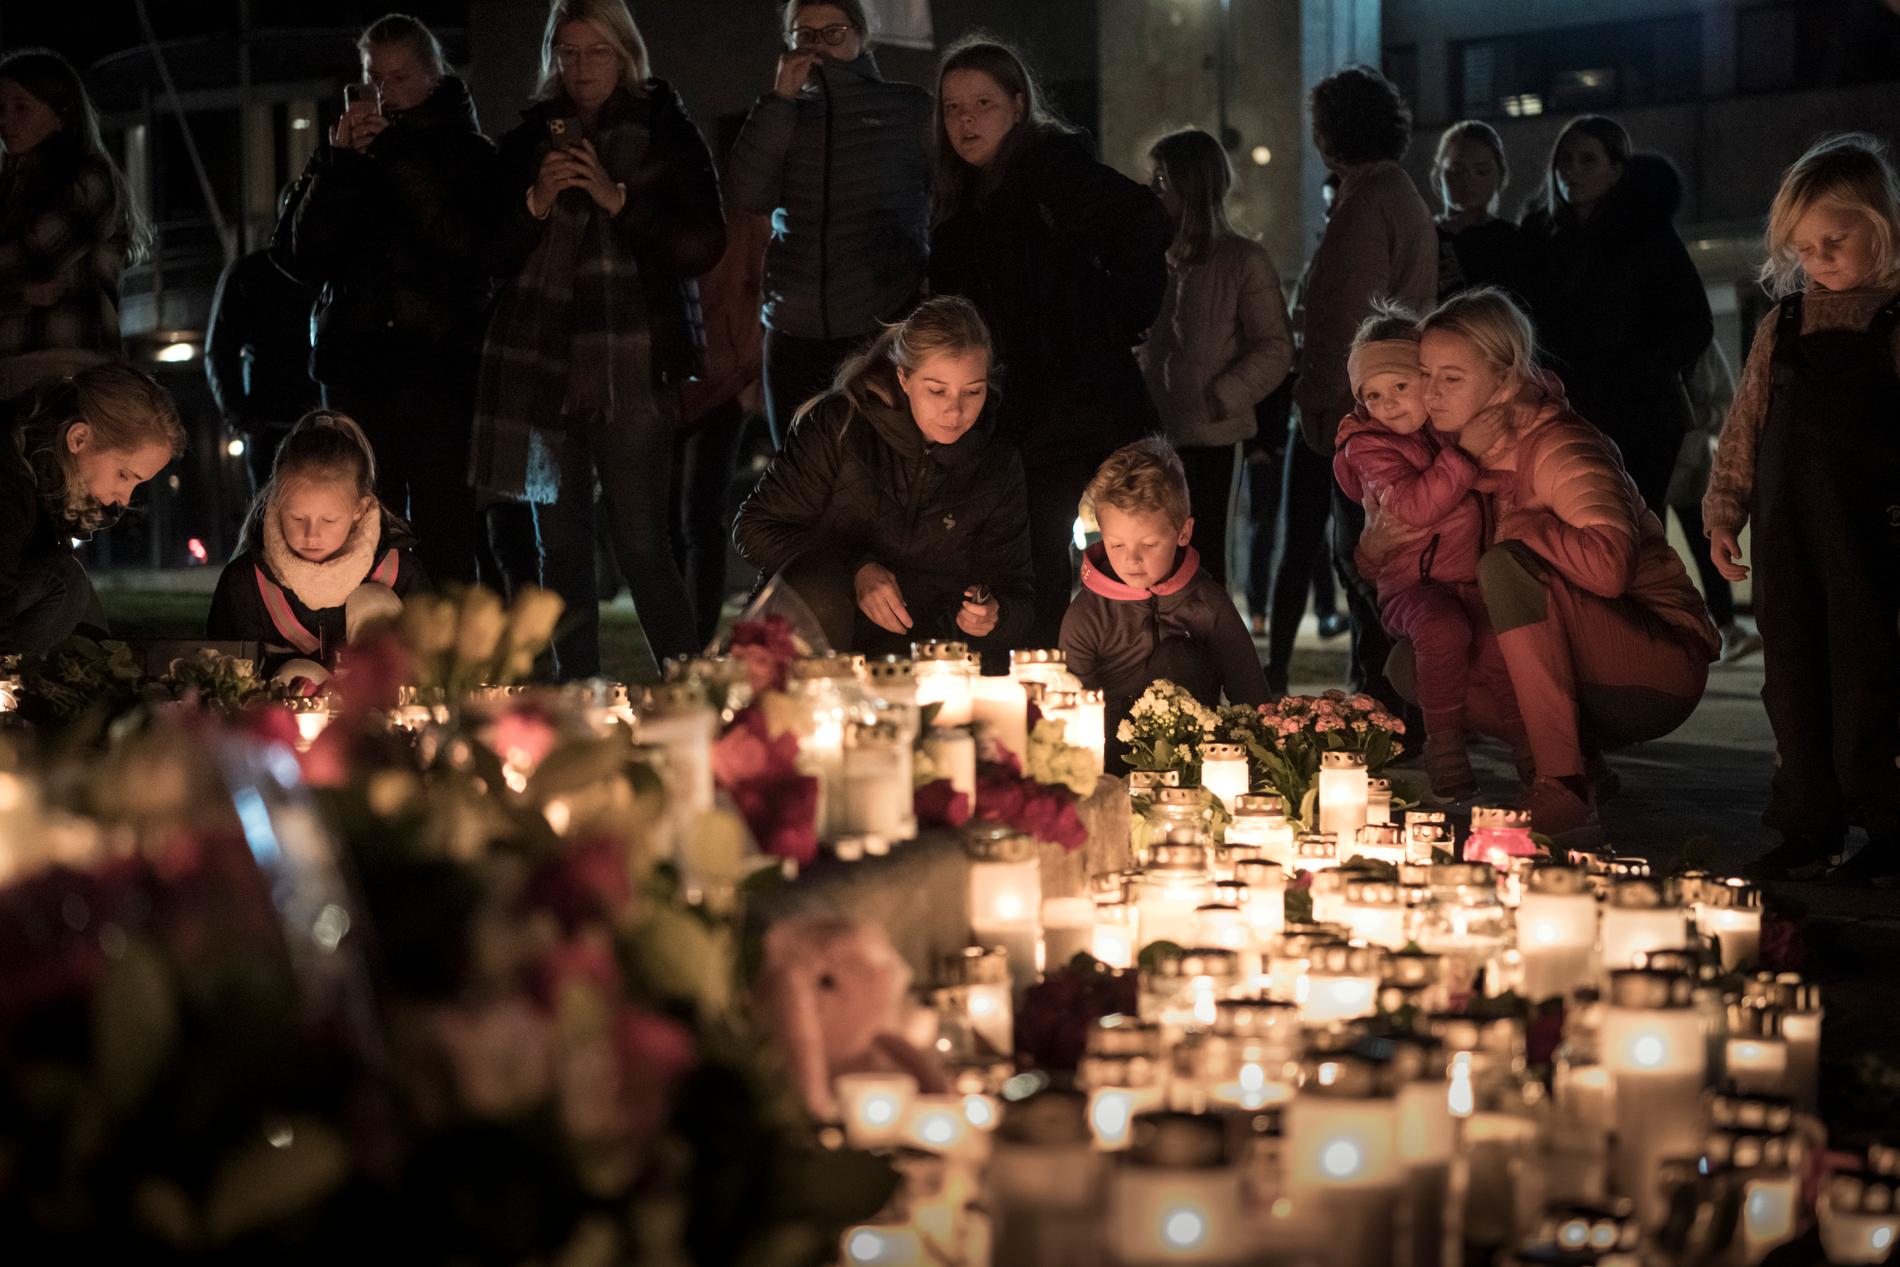 Espen Andersen Bråthen, 37, mördade fem personer och skadade tre i norska Kongsberg. Beväpnad med pil och båge attackerade han människor urskillningslöst. Många invånare i staden samlades vid den minnesplats som skapats. 